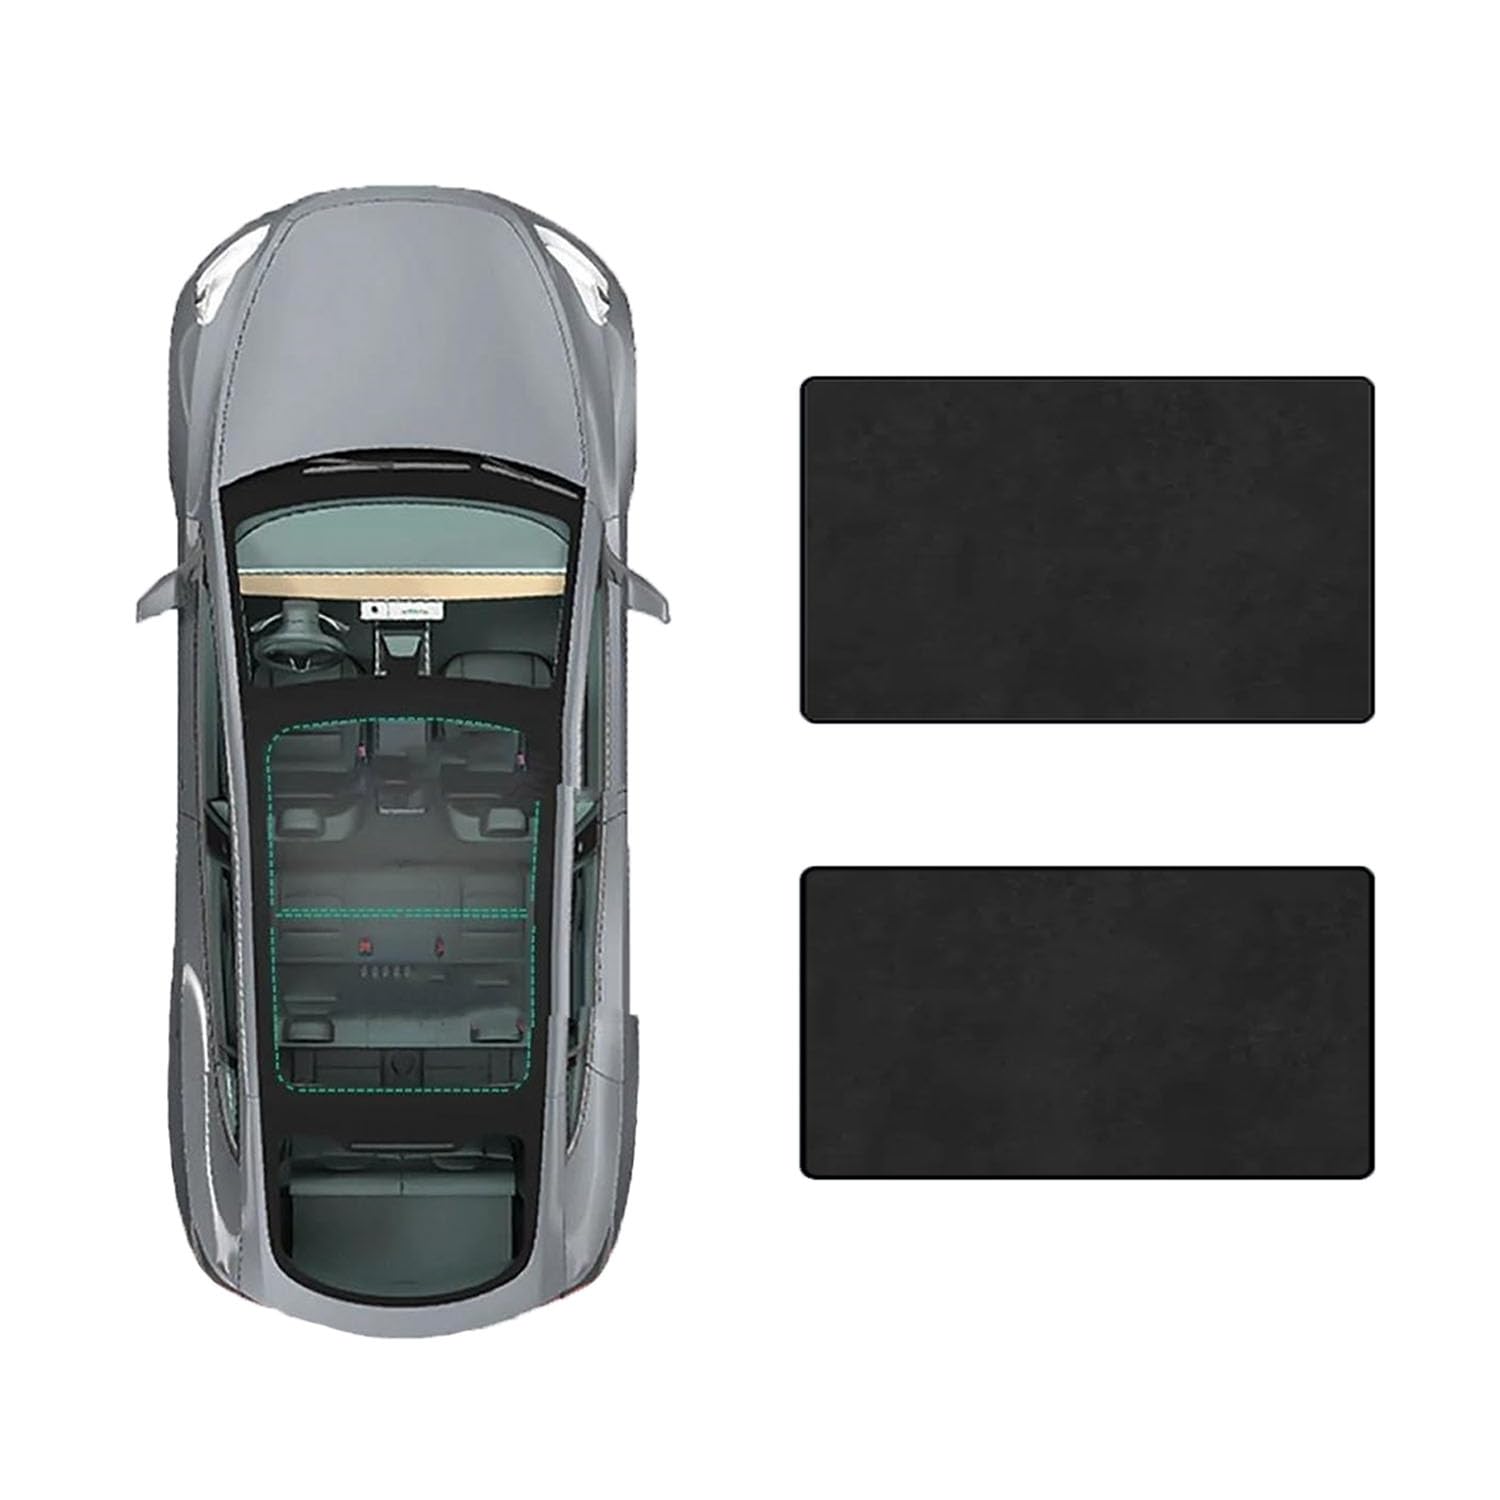 Auto Schiebedach Sonnenschirm Vorhang Für Mercedes Benz R-Class 2010-,UV-Schutz Schattierung vorne Heckscheibe Sonnenschutz,D-Black Suede von JiAQen